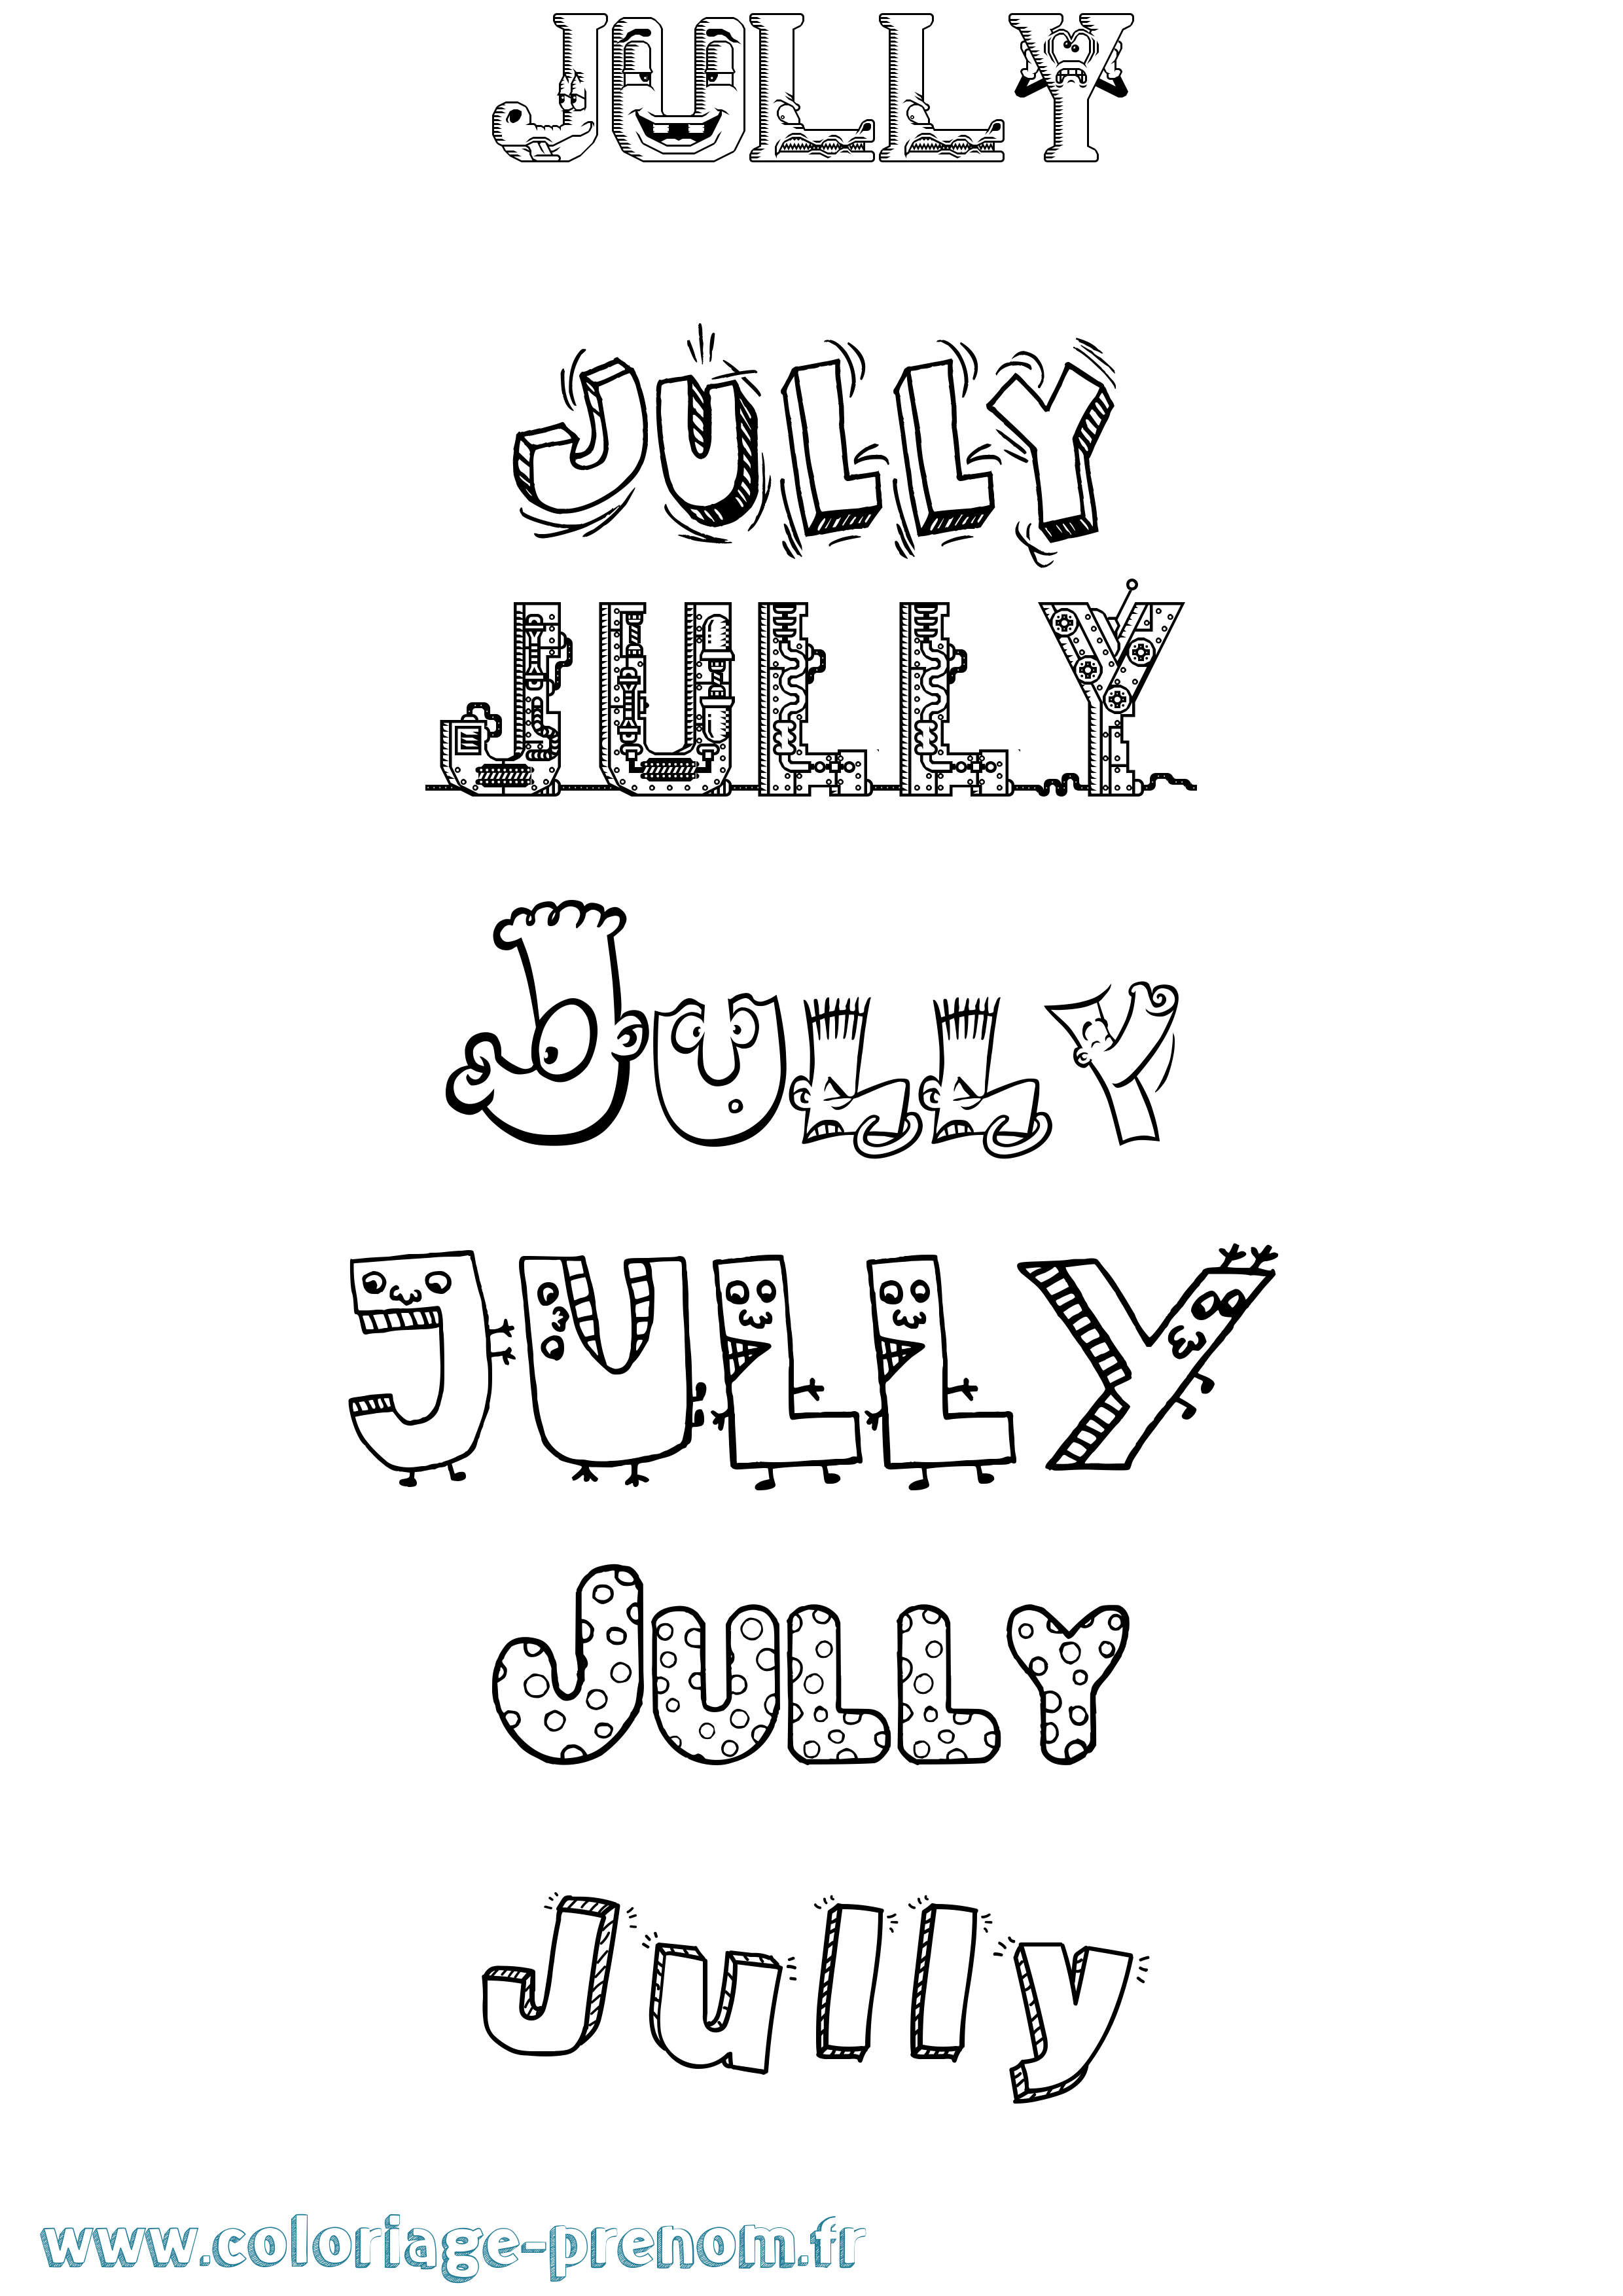 Coloriage prénom Jully Fun